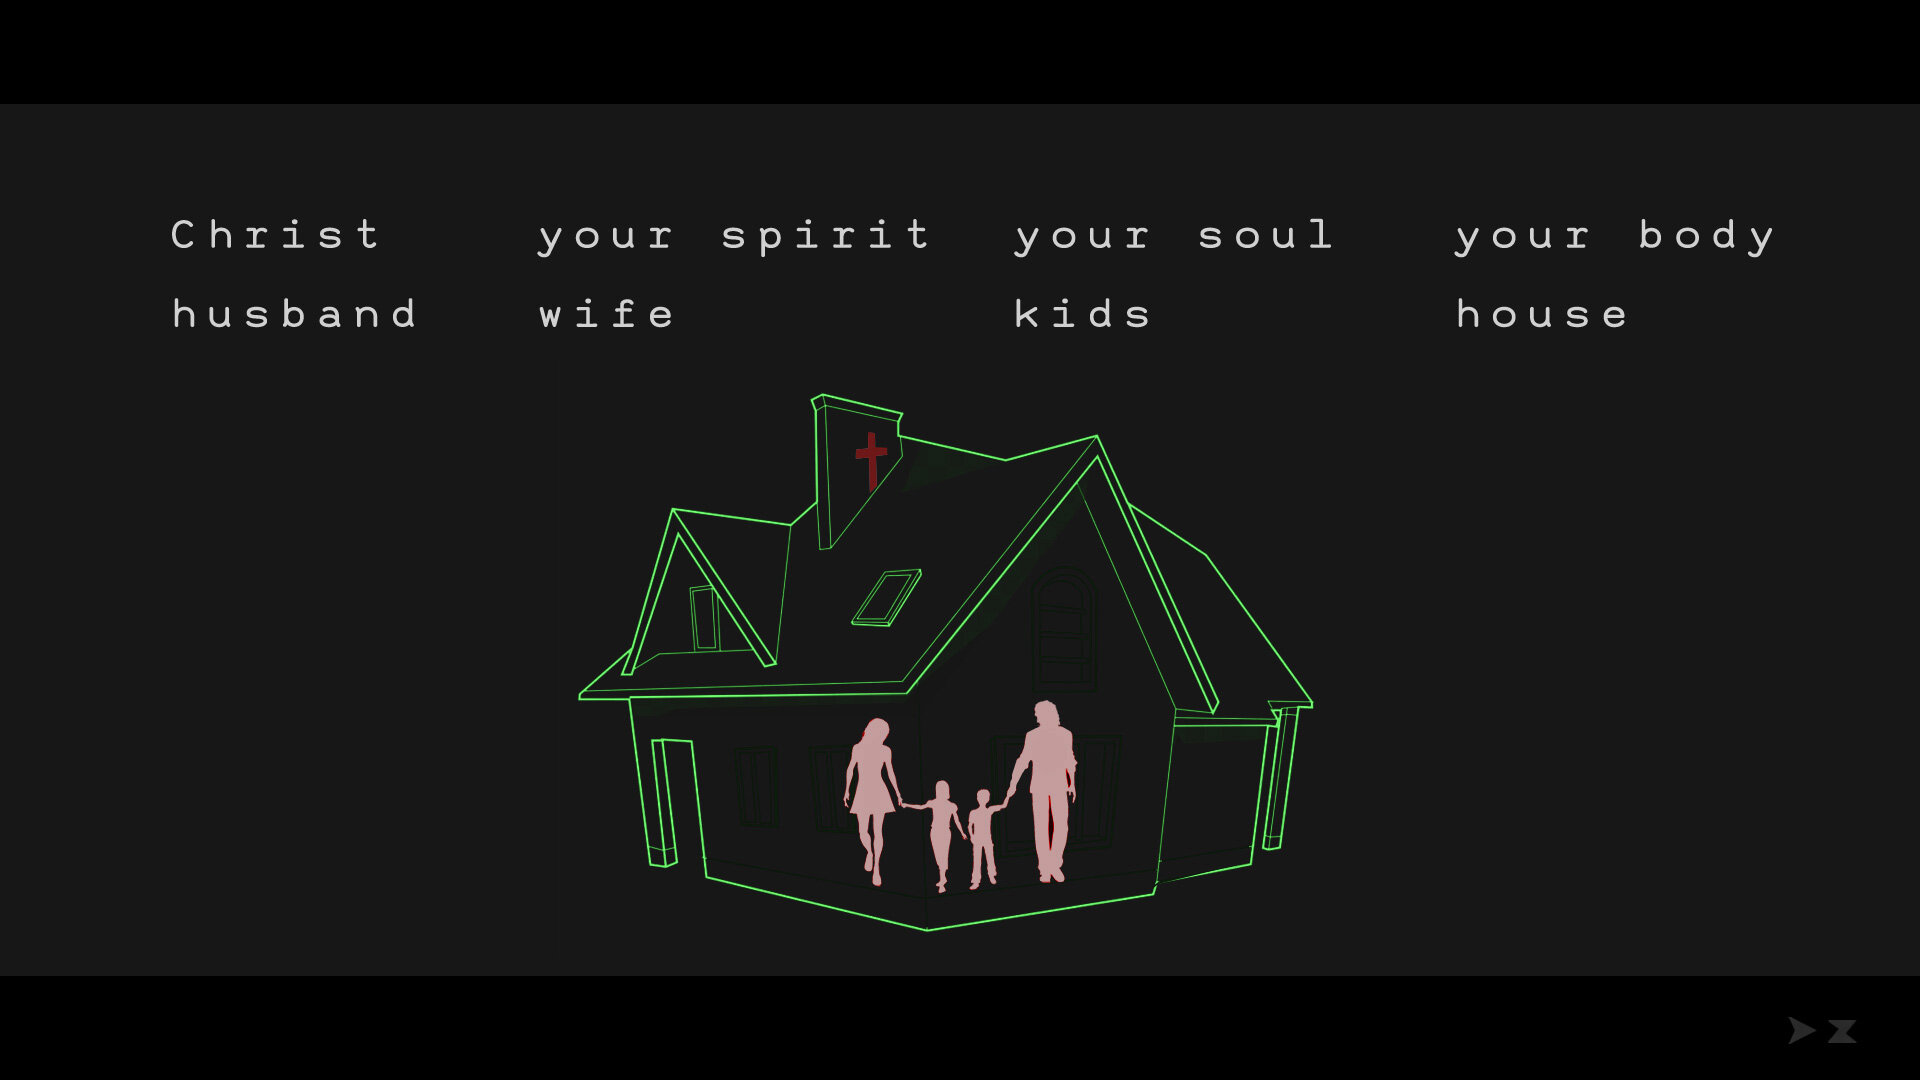 04_spirit-soul-body_house.jpg